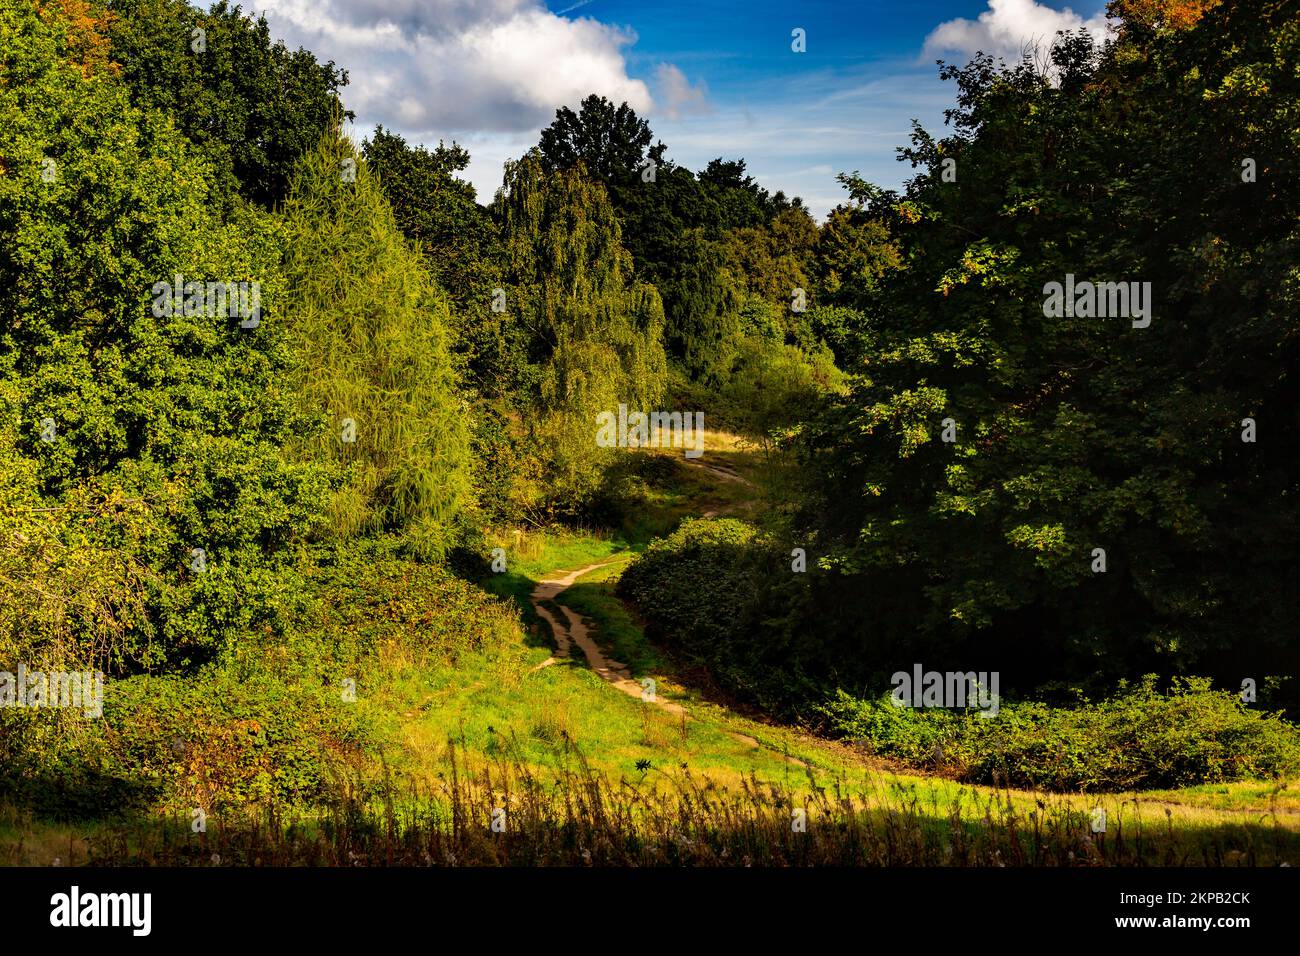 Hampstead Heath in North London nimmt eine riesige Gegend ein und bietet wunderschöne Spaziergänge und Klettertouren, wie in diesem sonnigen Bild in der Nähe des berühmten Tals der Gesundheit. Stockfoto